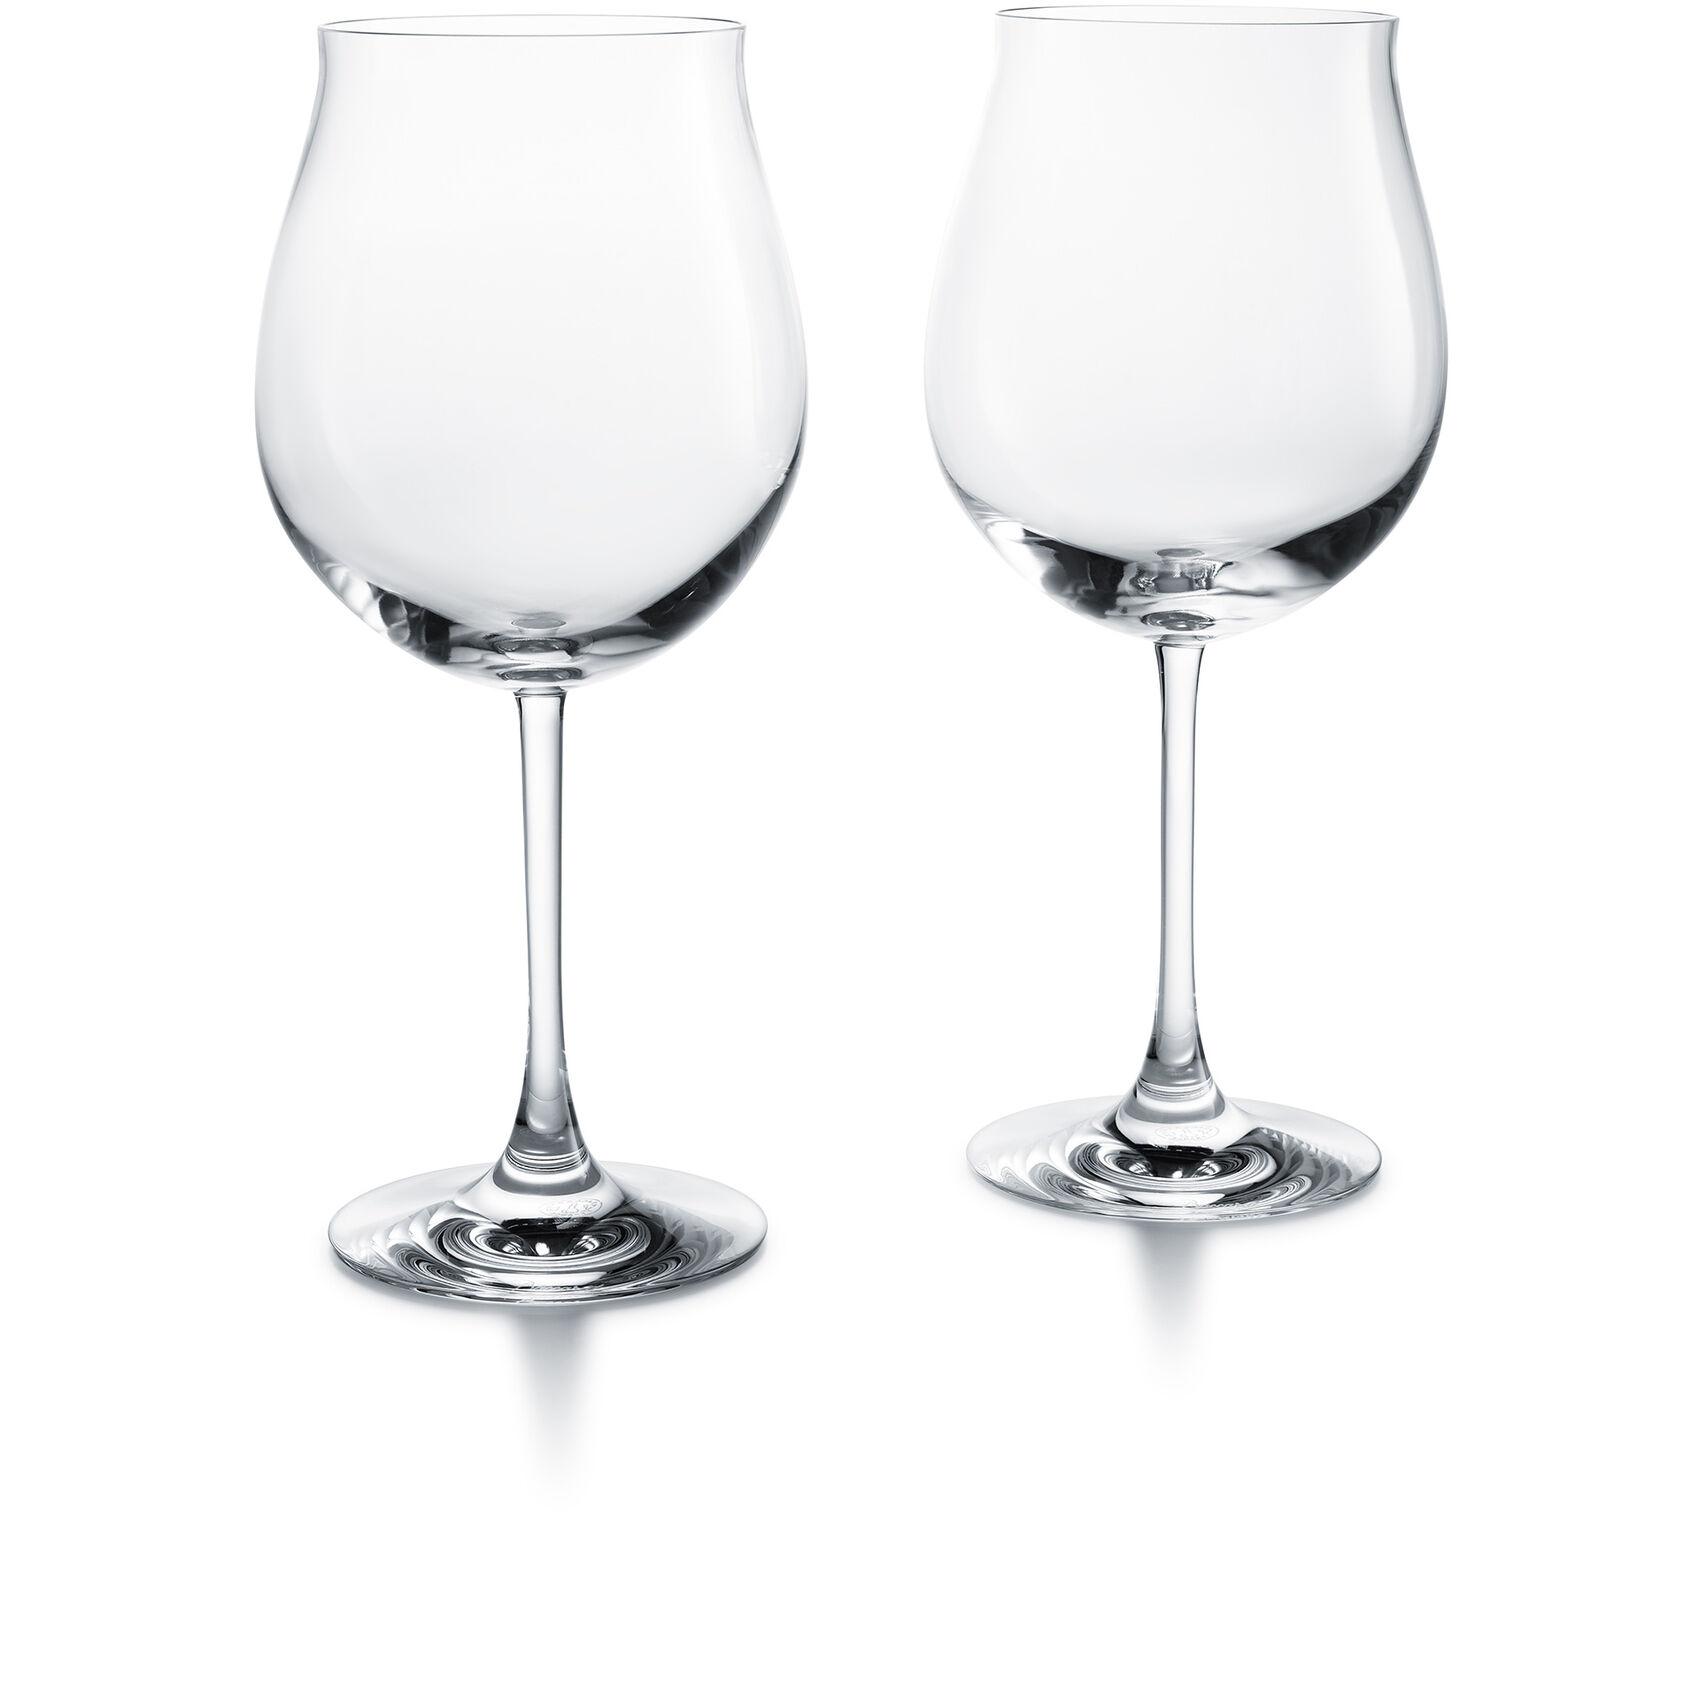 Baccarate Degustation Grand Bourgogne Tasting Glass, pair